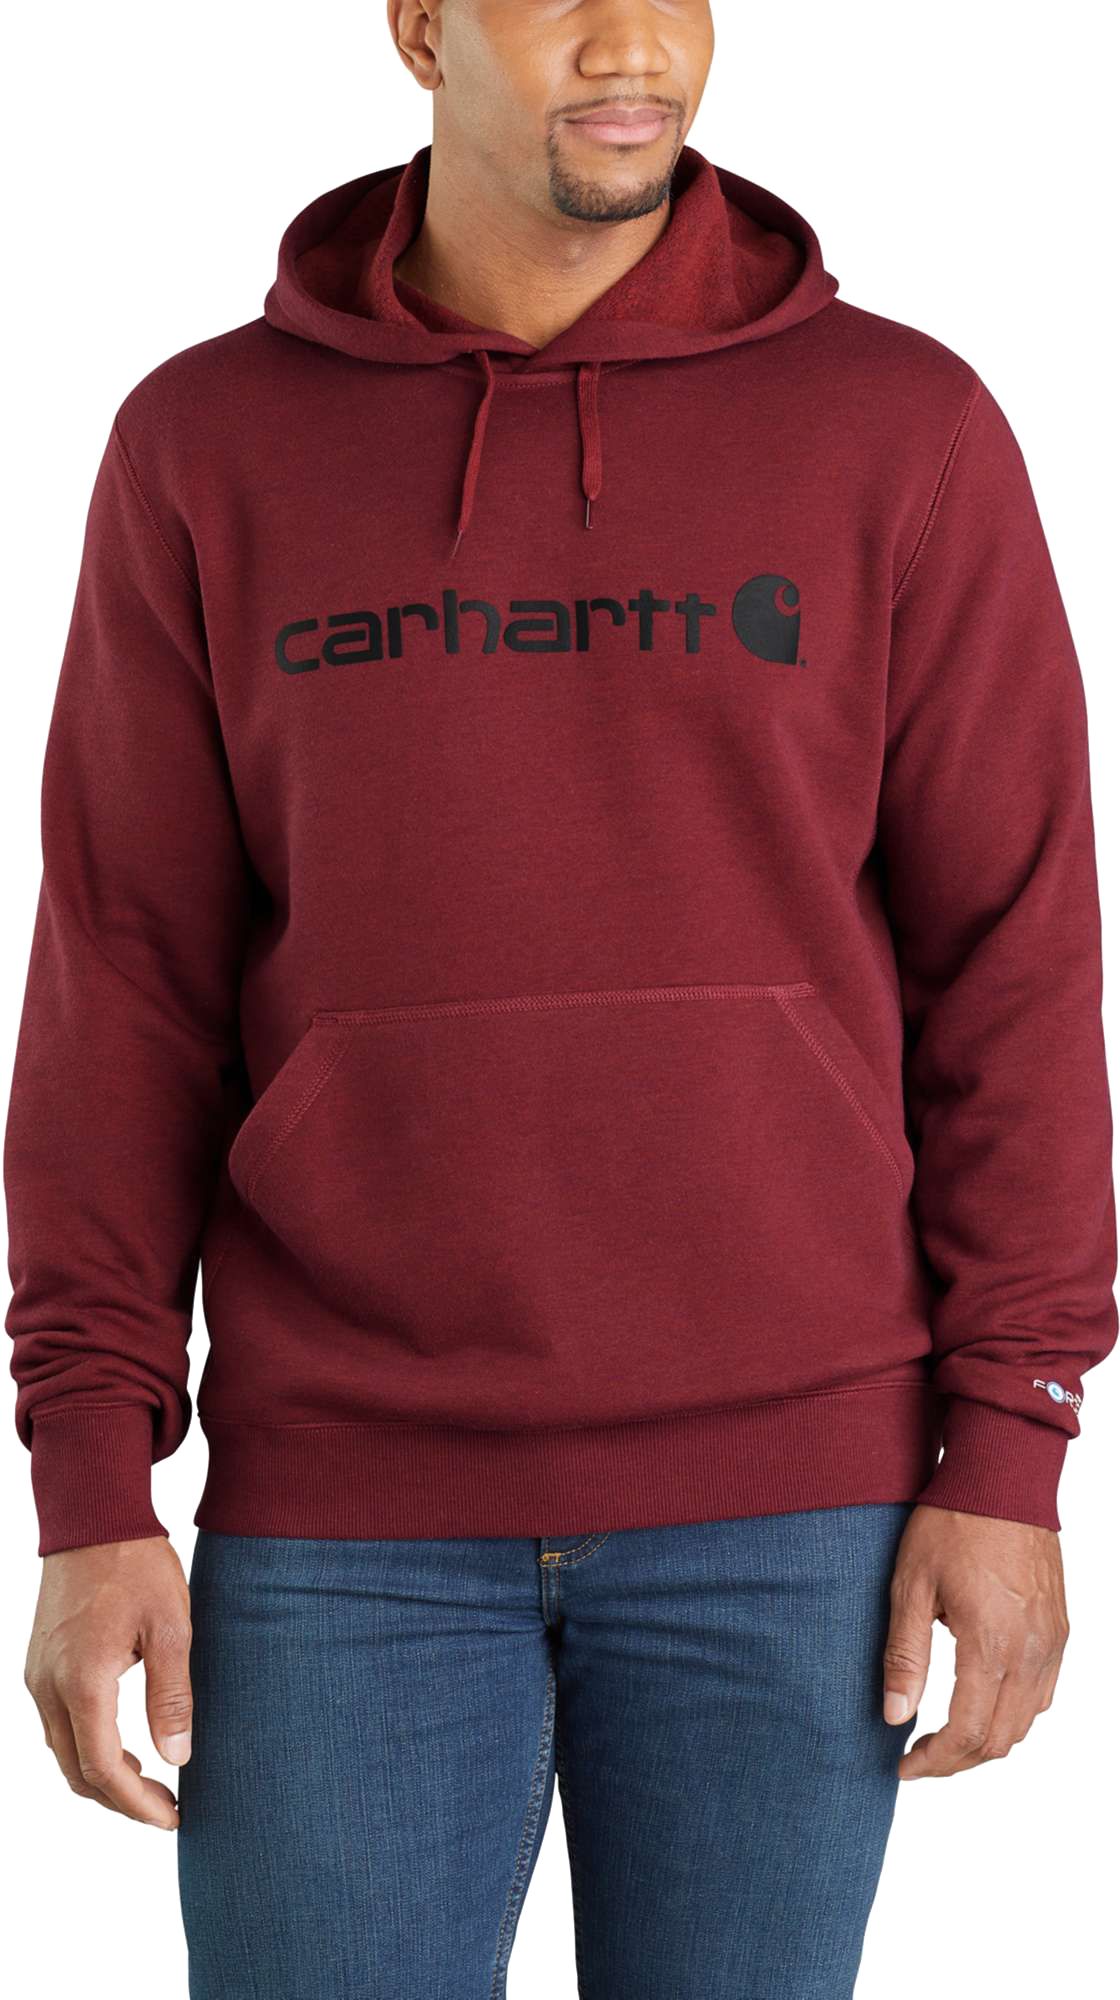 maroon carhartt sweatshirt